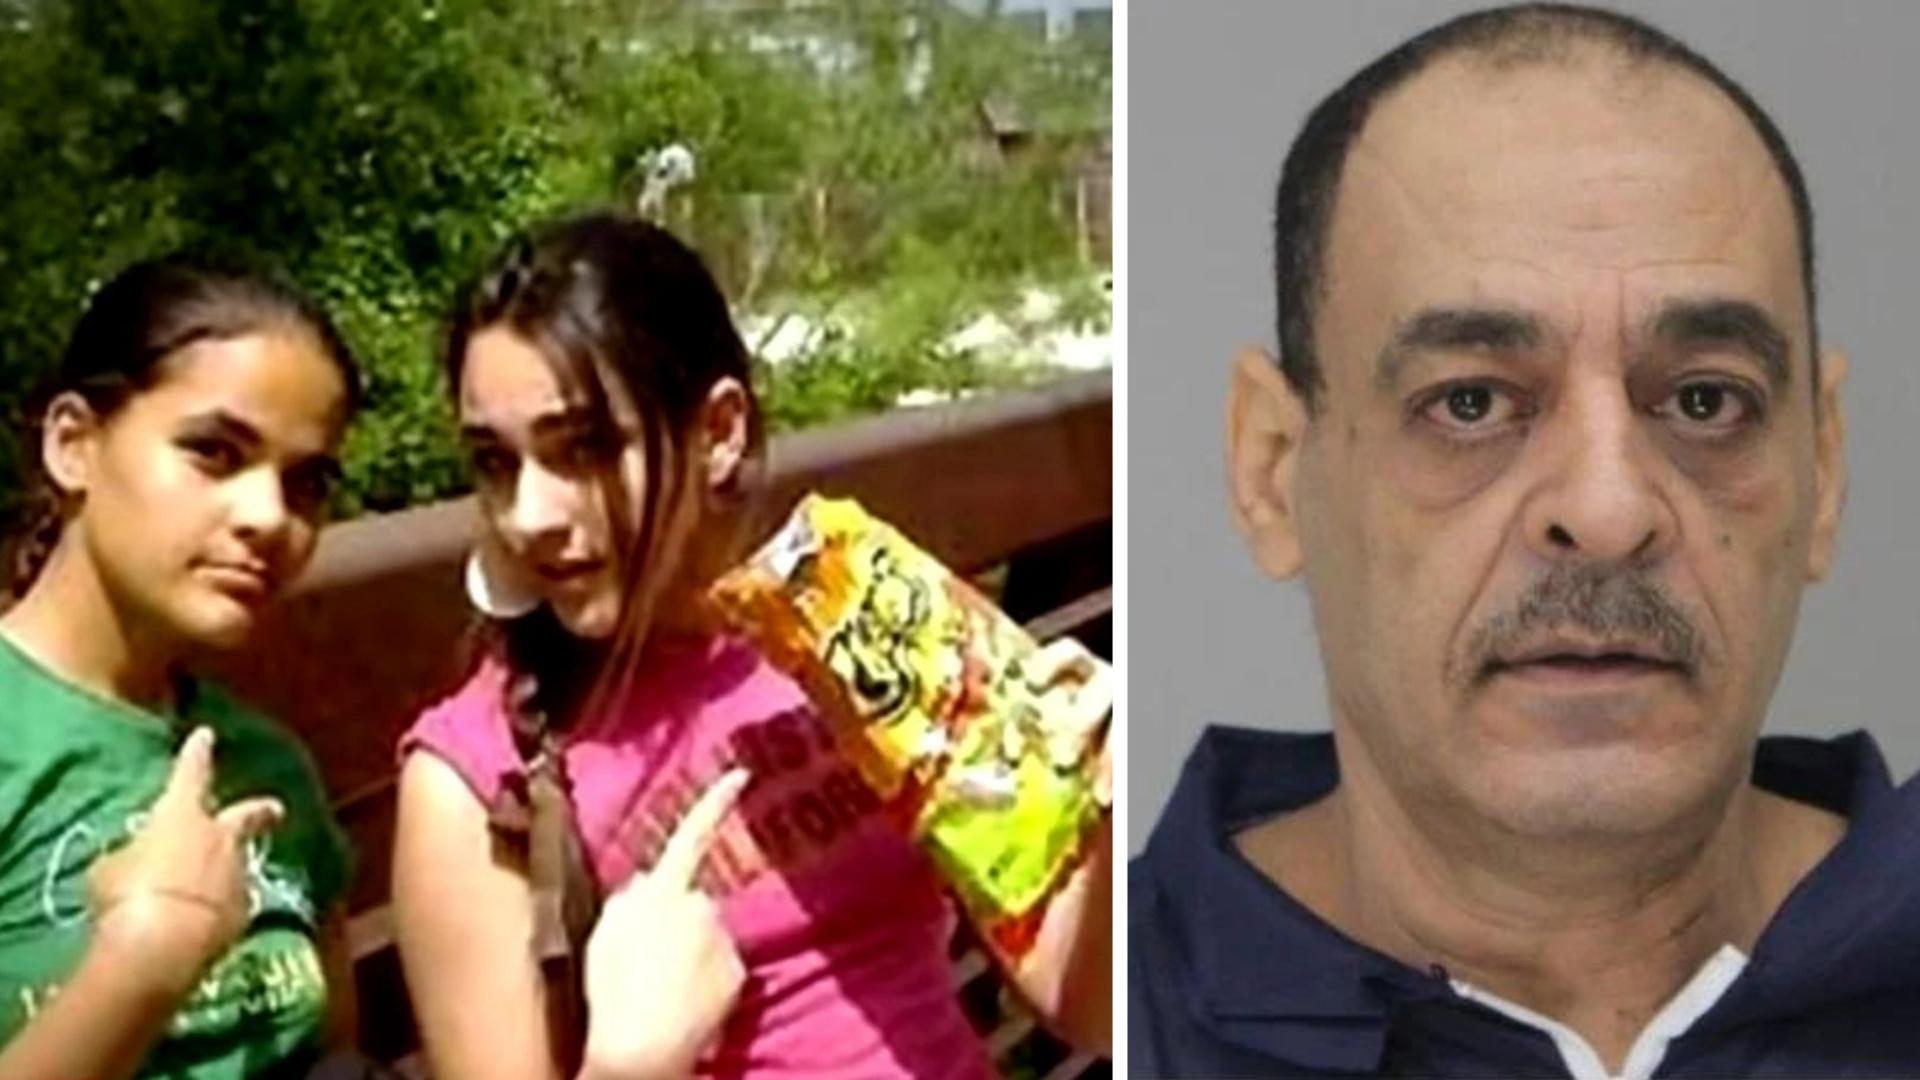 Juicio del egipcio acusado de matar a hijas. Fotomontaje: ADN Cuba